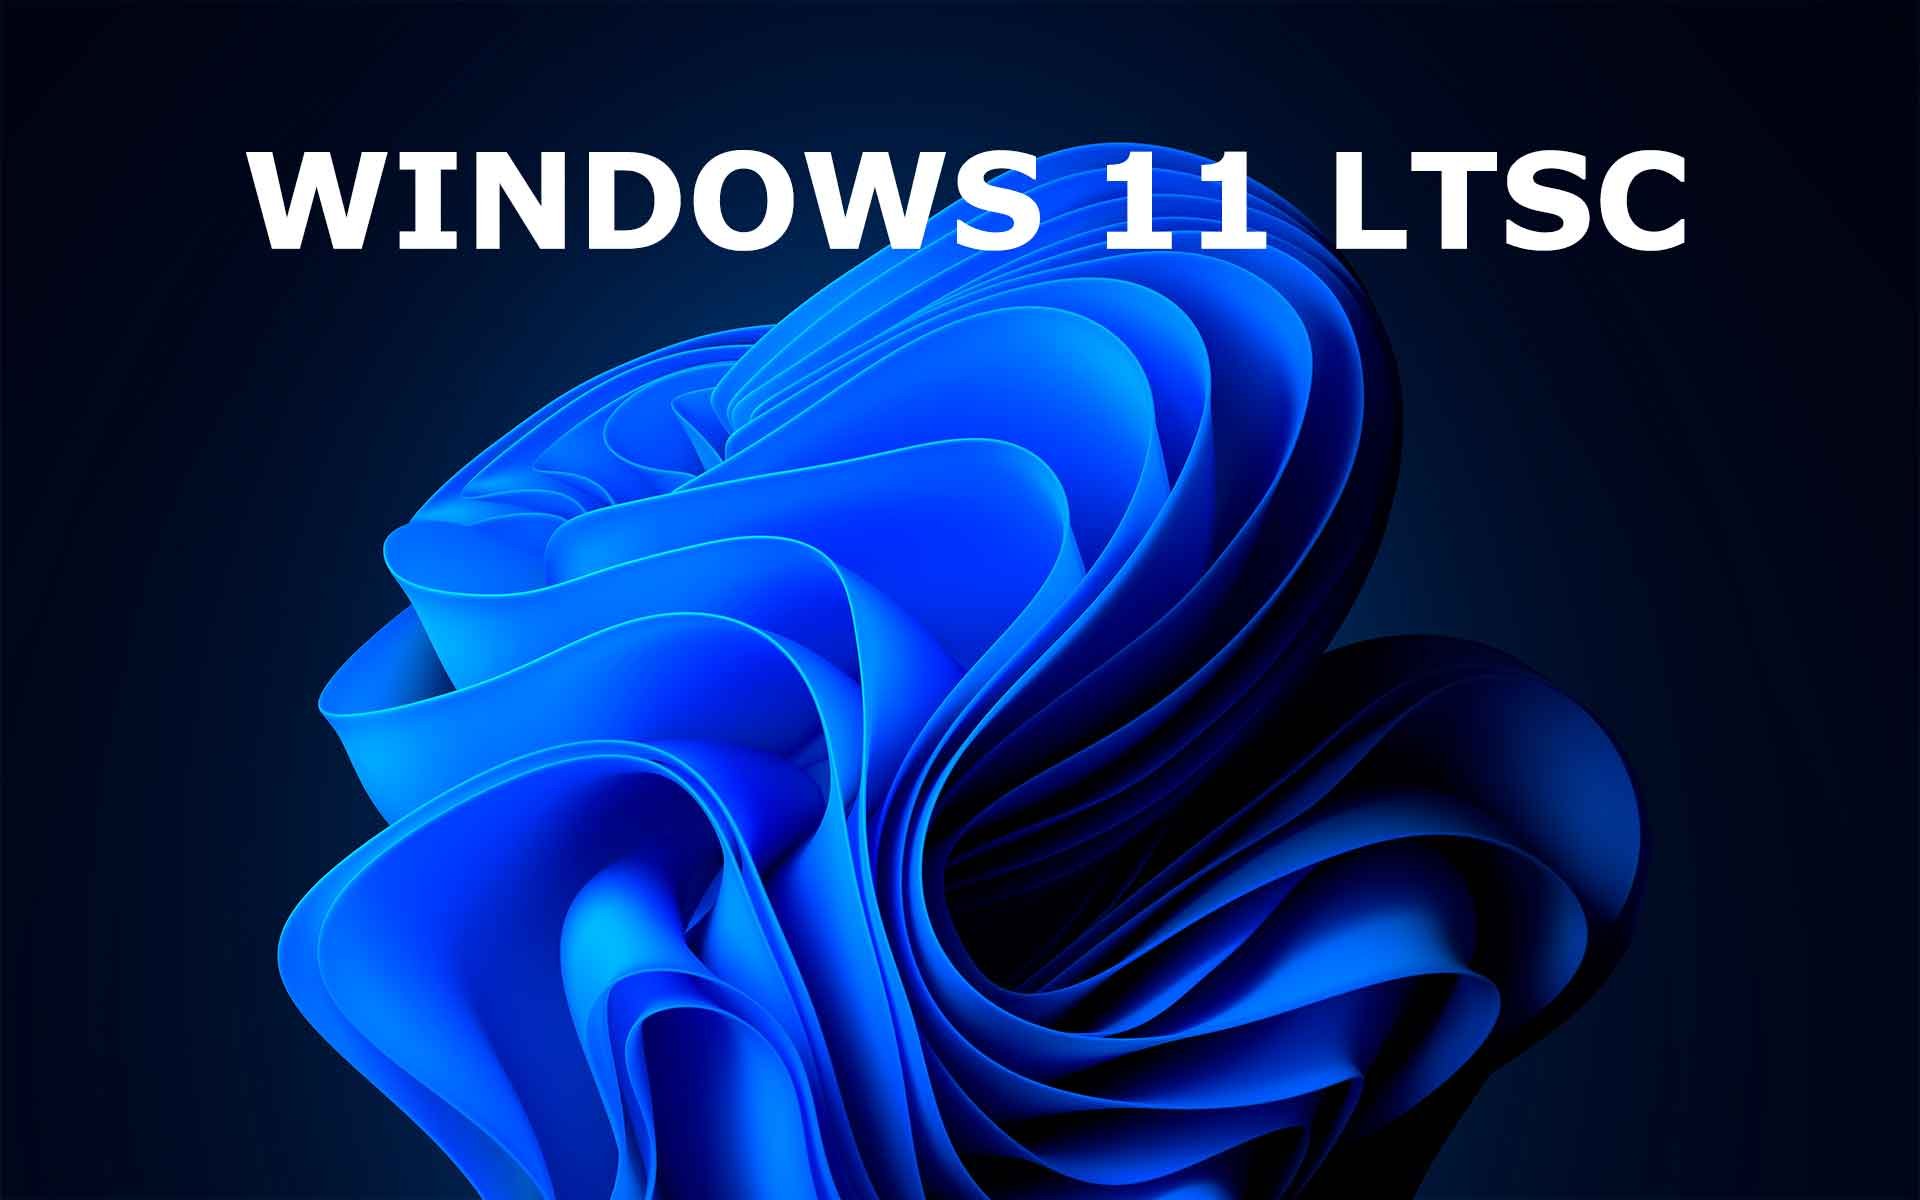 Windows 11, Microsoft annonce une nouvelle édition, Windows 11 LTSC